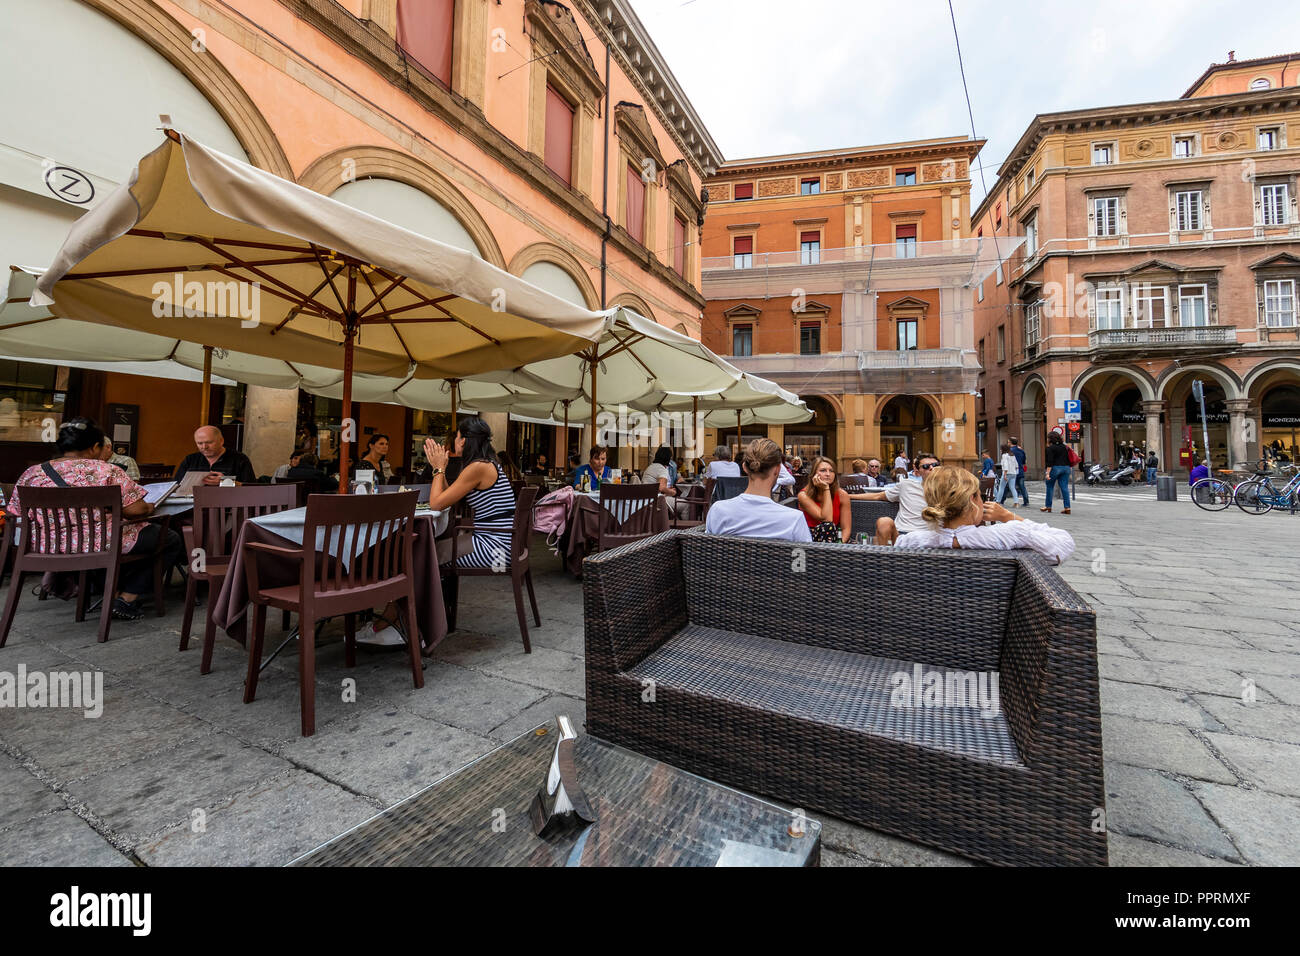 Caffè Zanarini in Piazza Galvani, Bologna, Italy. Stock Photo